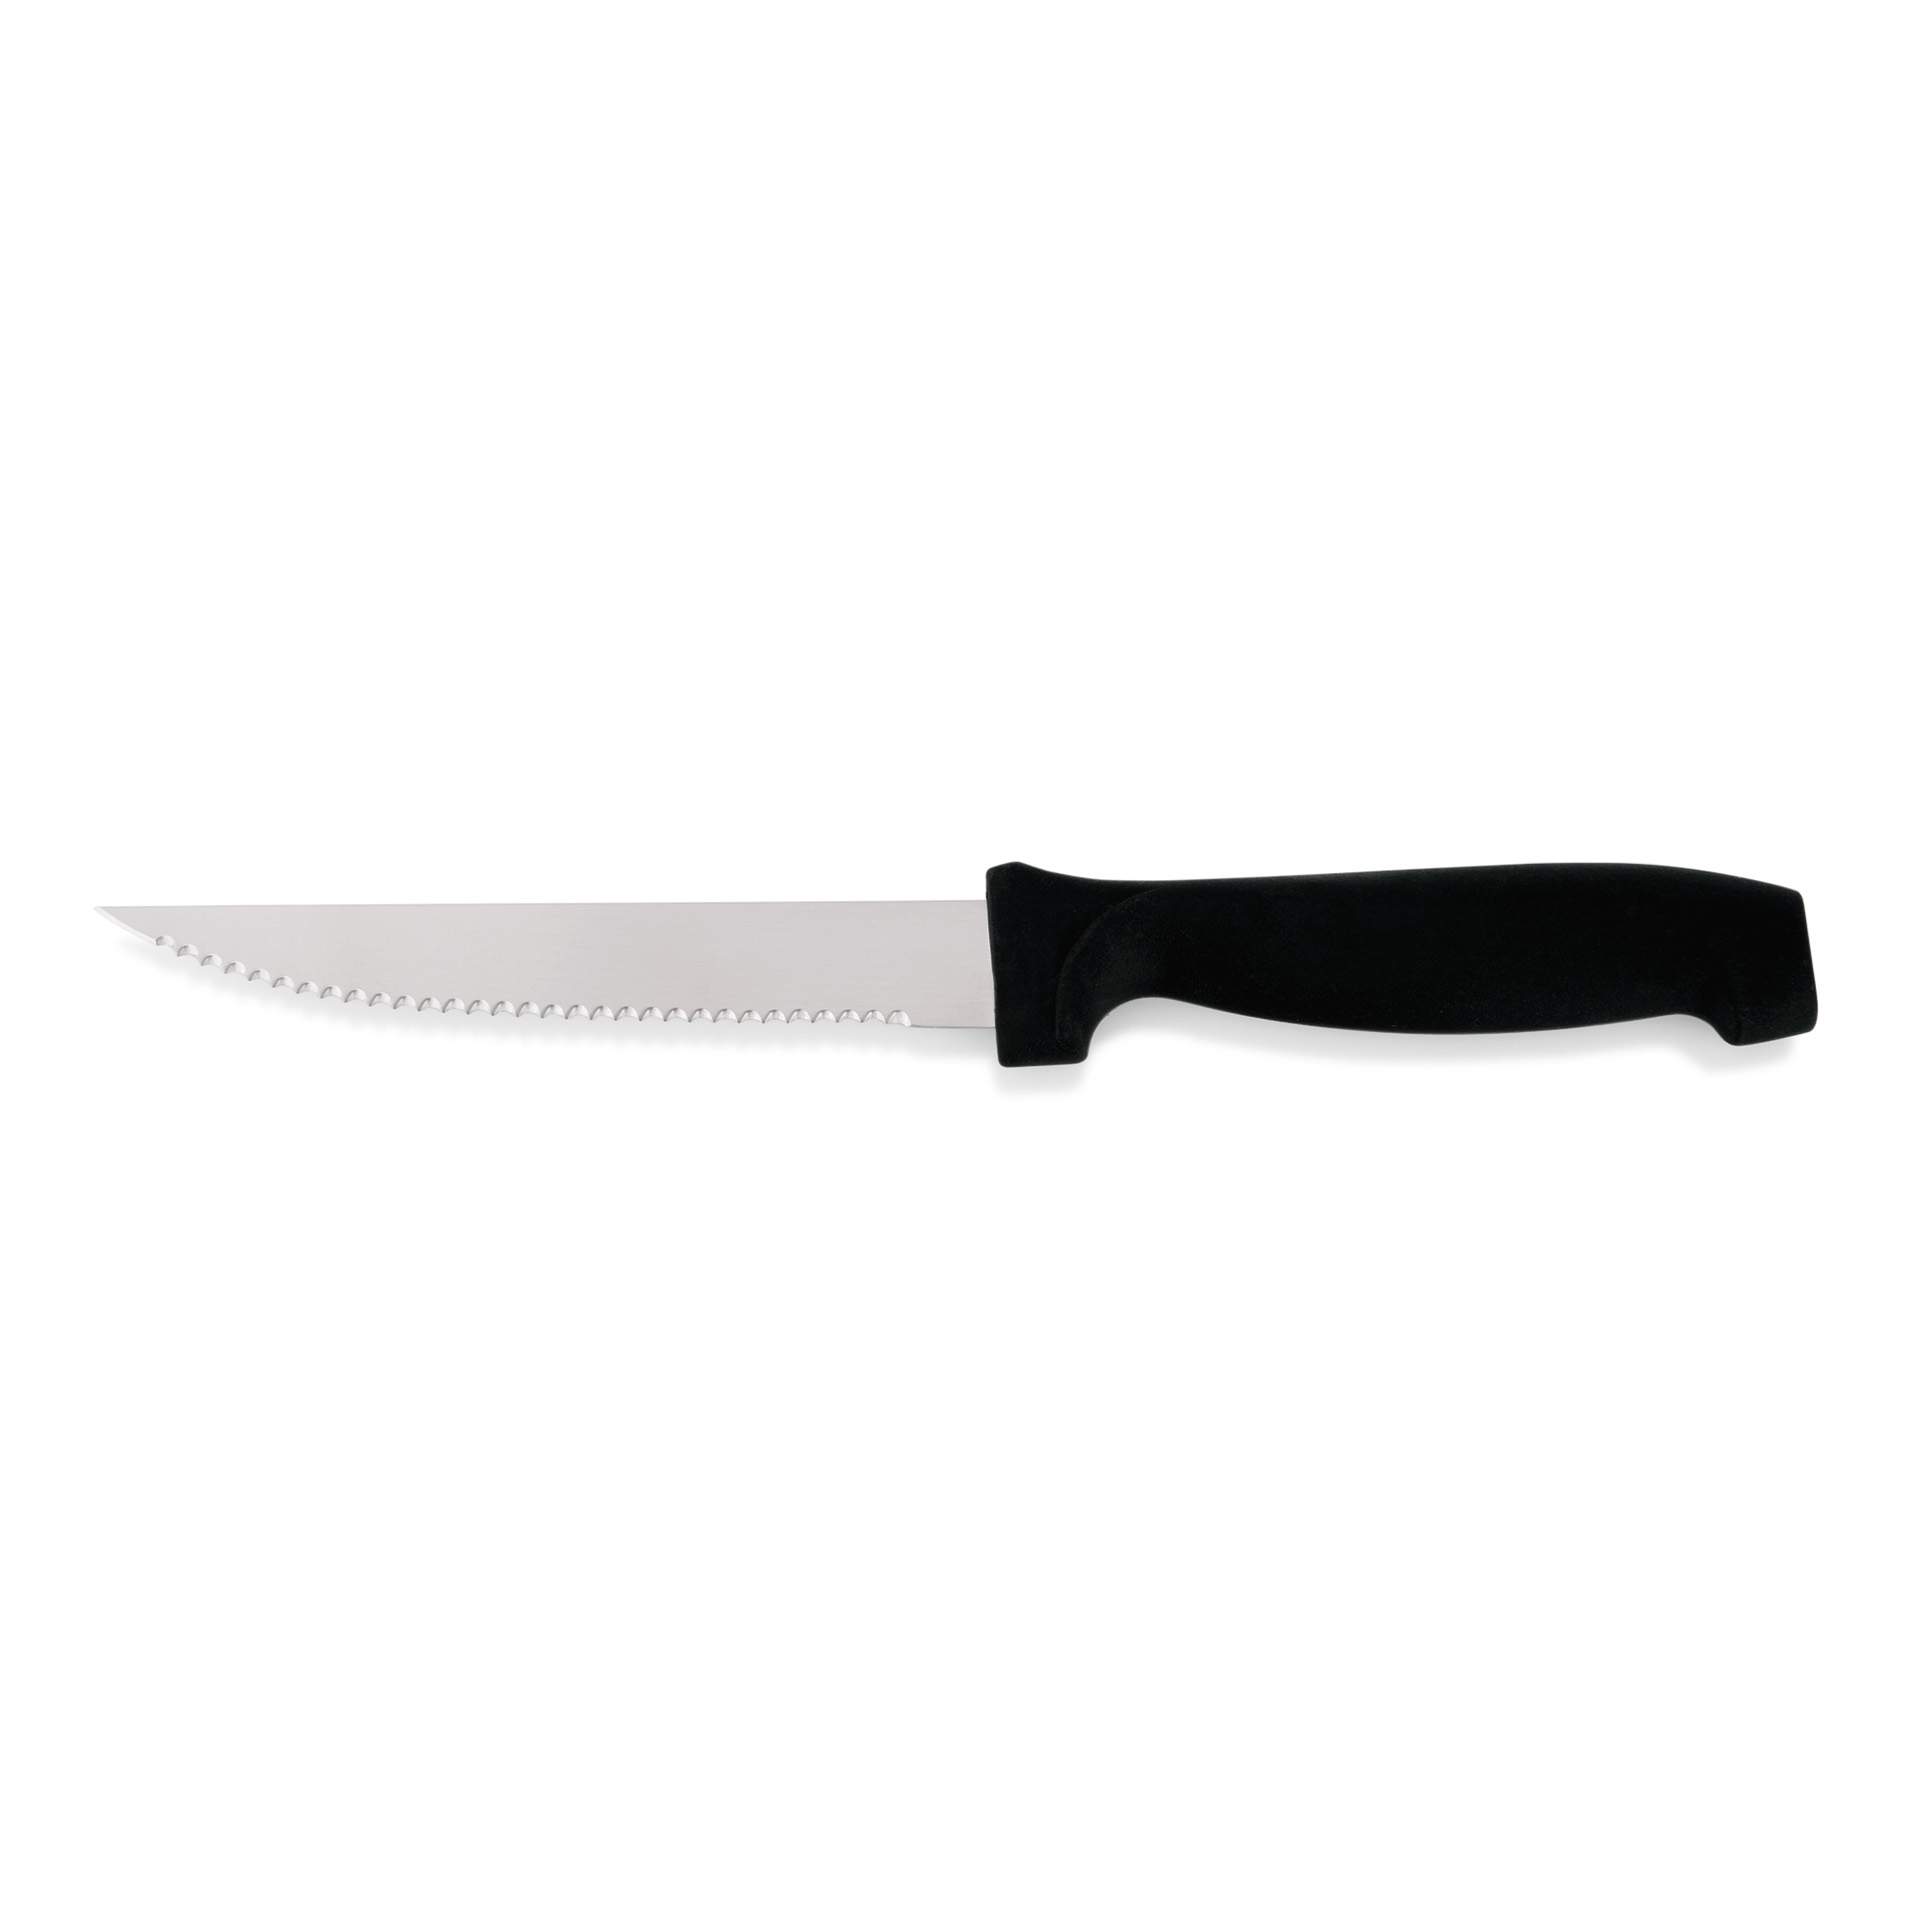 Steakmesser - mit schwarzem Kunststoffgriff  - Klingenlänge 11 cm - Edelstahl - 6416110-A